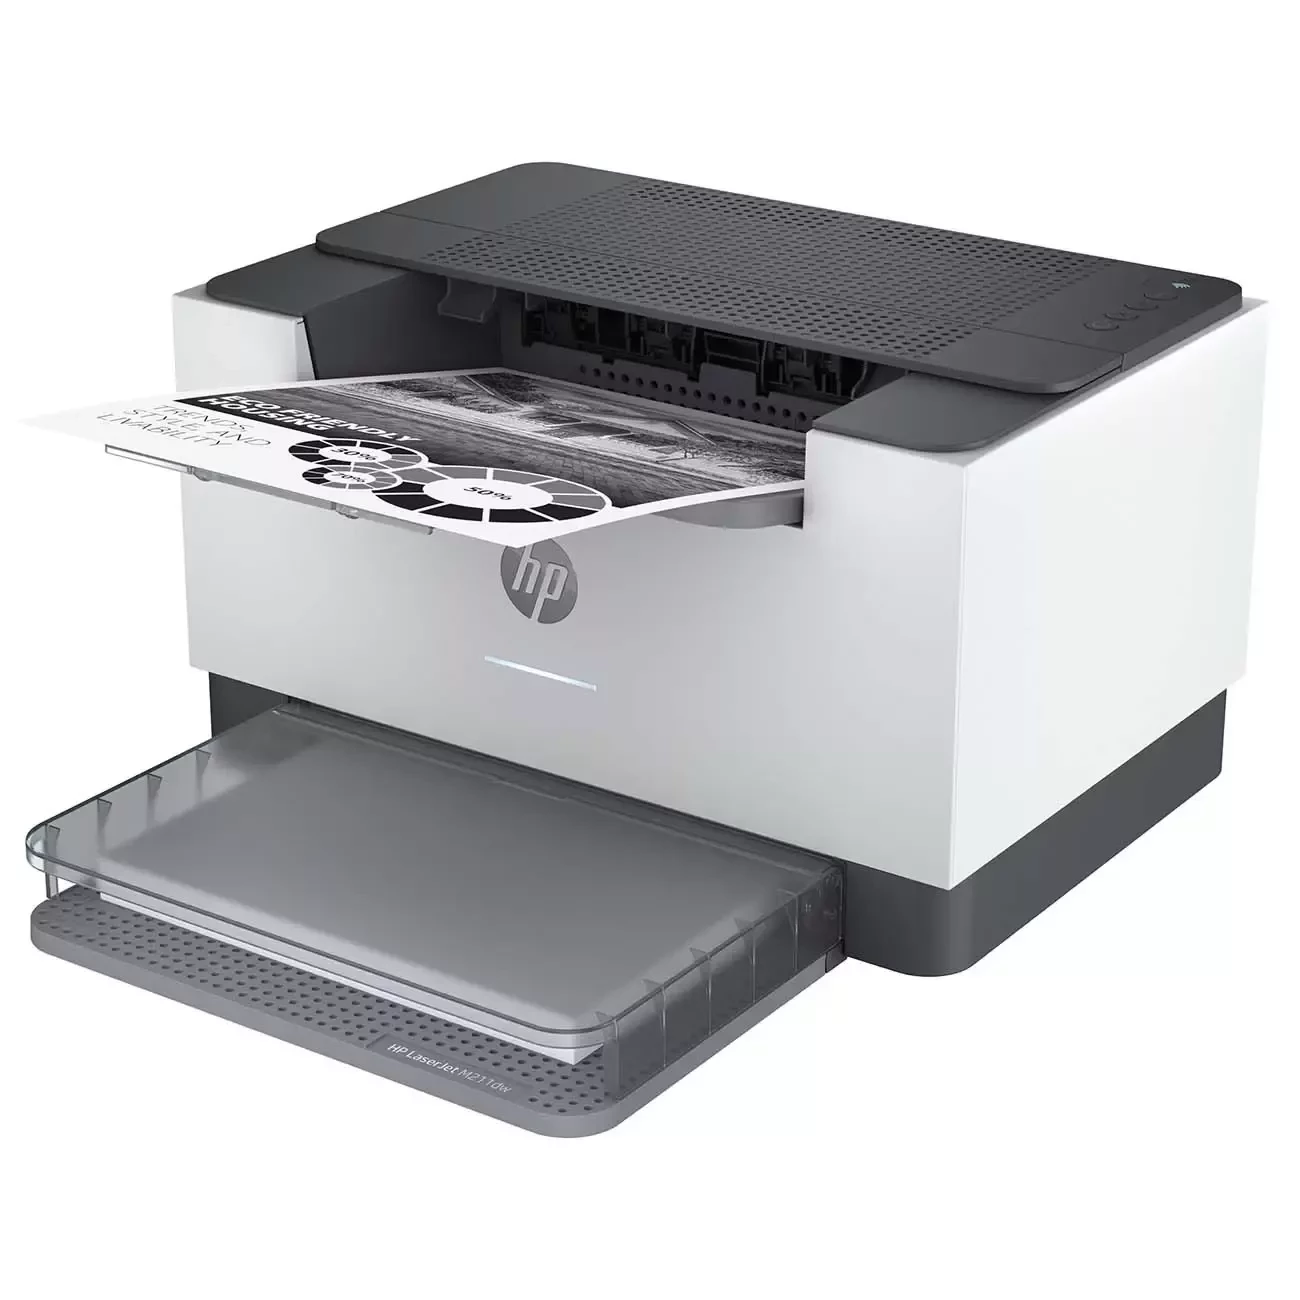 Принтер HP LaserJet Pro M211dw



